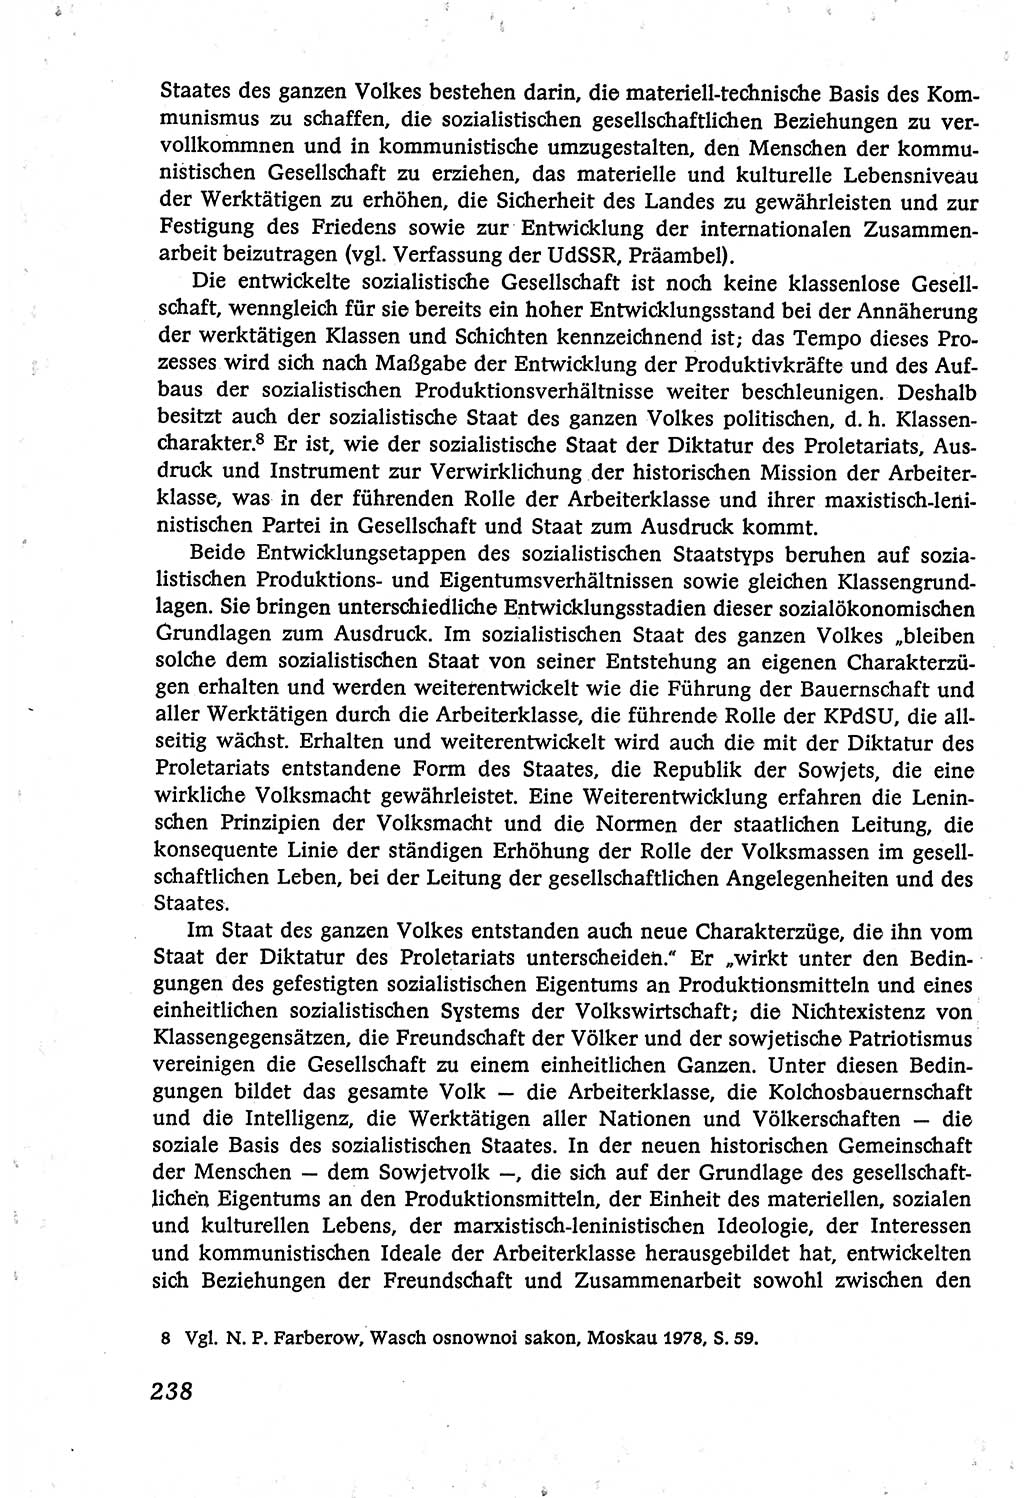 Marxistisch-leninistische (ML) Staats- und Rechtstheorie [Deutsche Demokratische Republik (DDR)], Lehrbuch 1980, Seite 238 (ML St.-R.-Th. DDR Lb. 1980, S. 238)